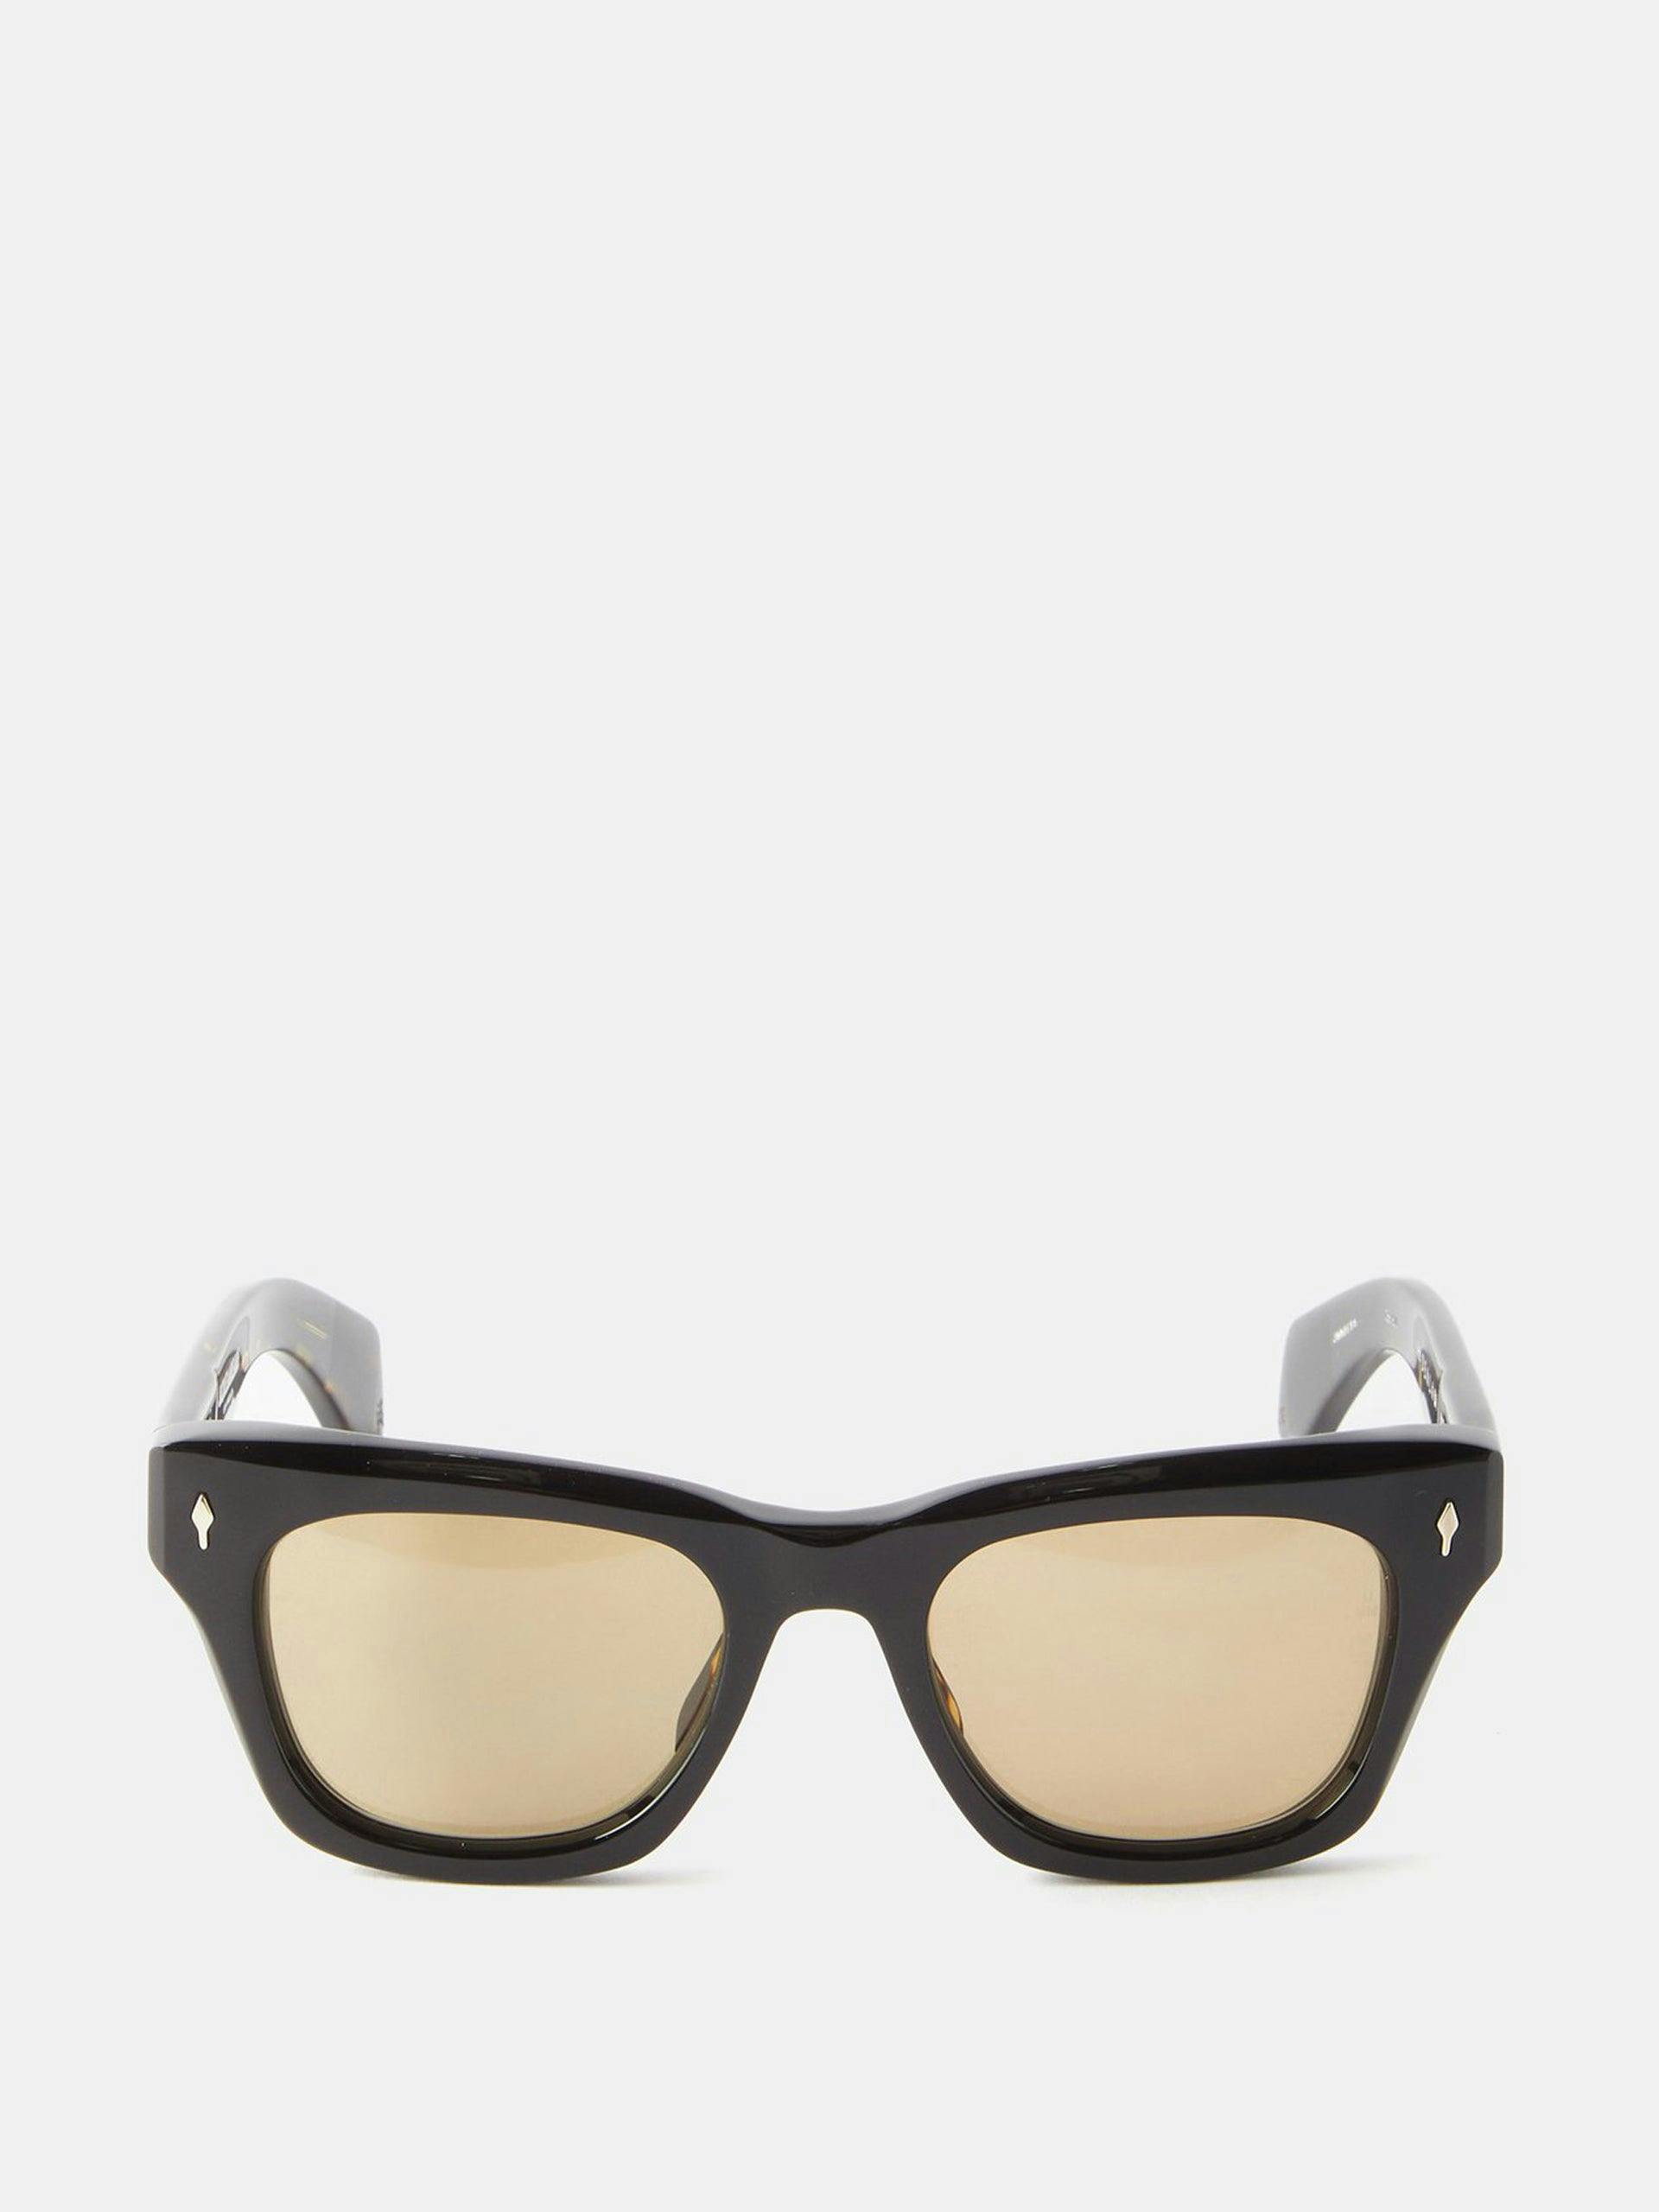 Black square acetate sunglasses